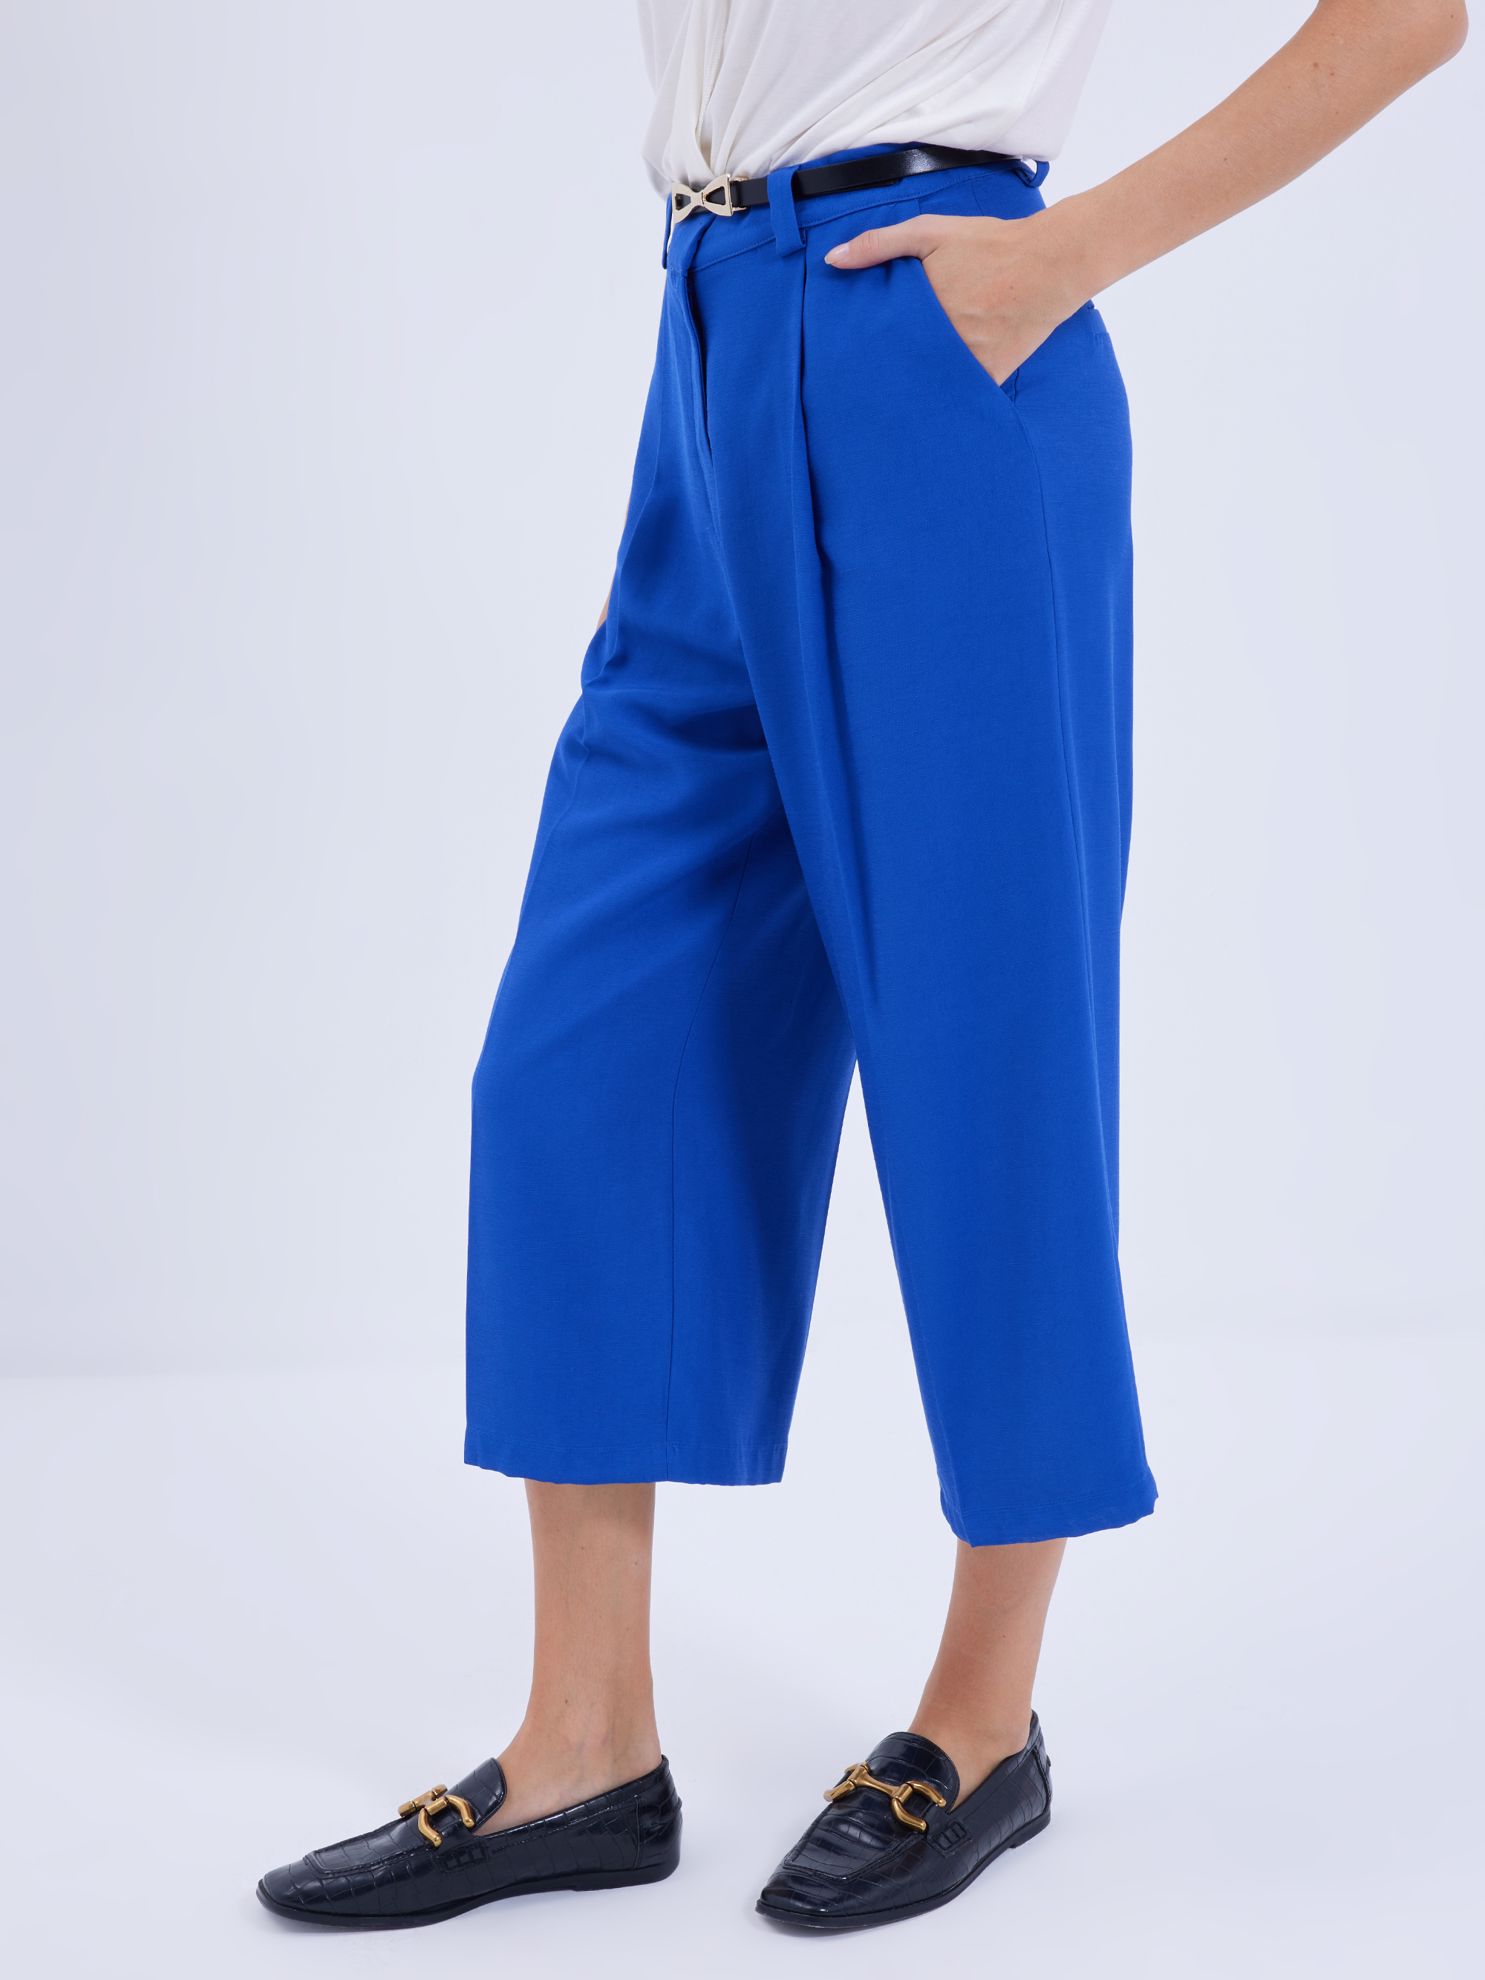 Karaca Kadın Pantolon-Saks Mavi. ürün görseli